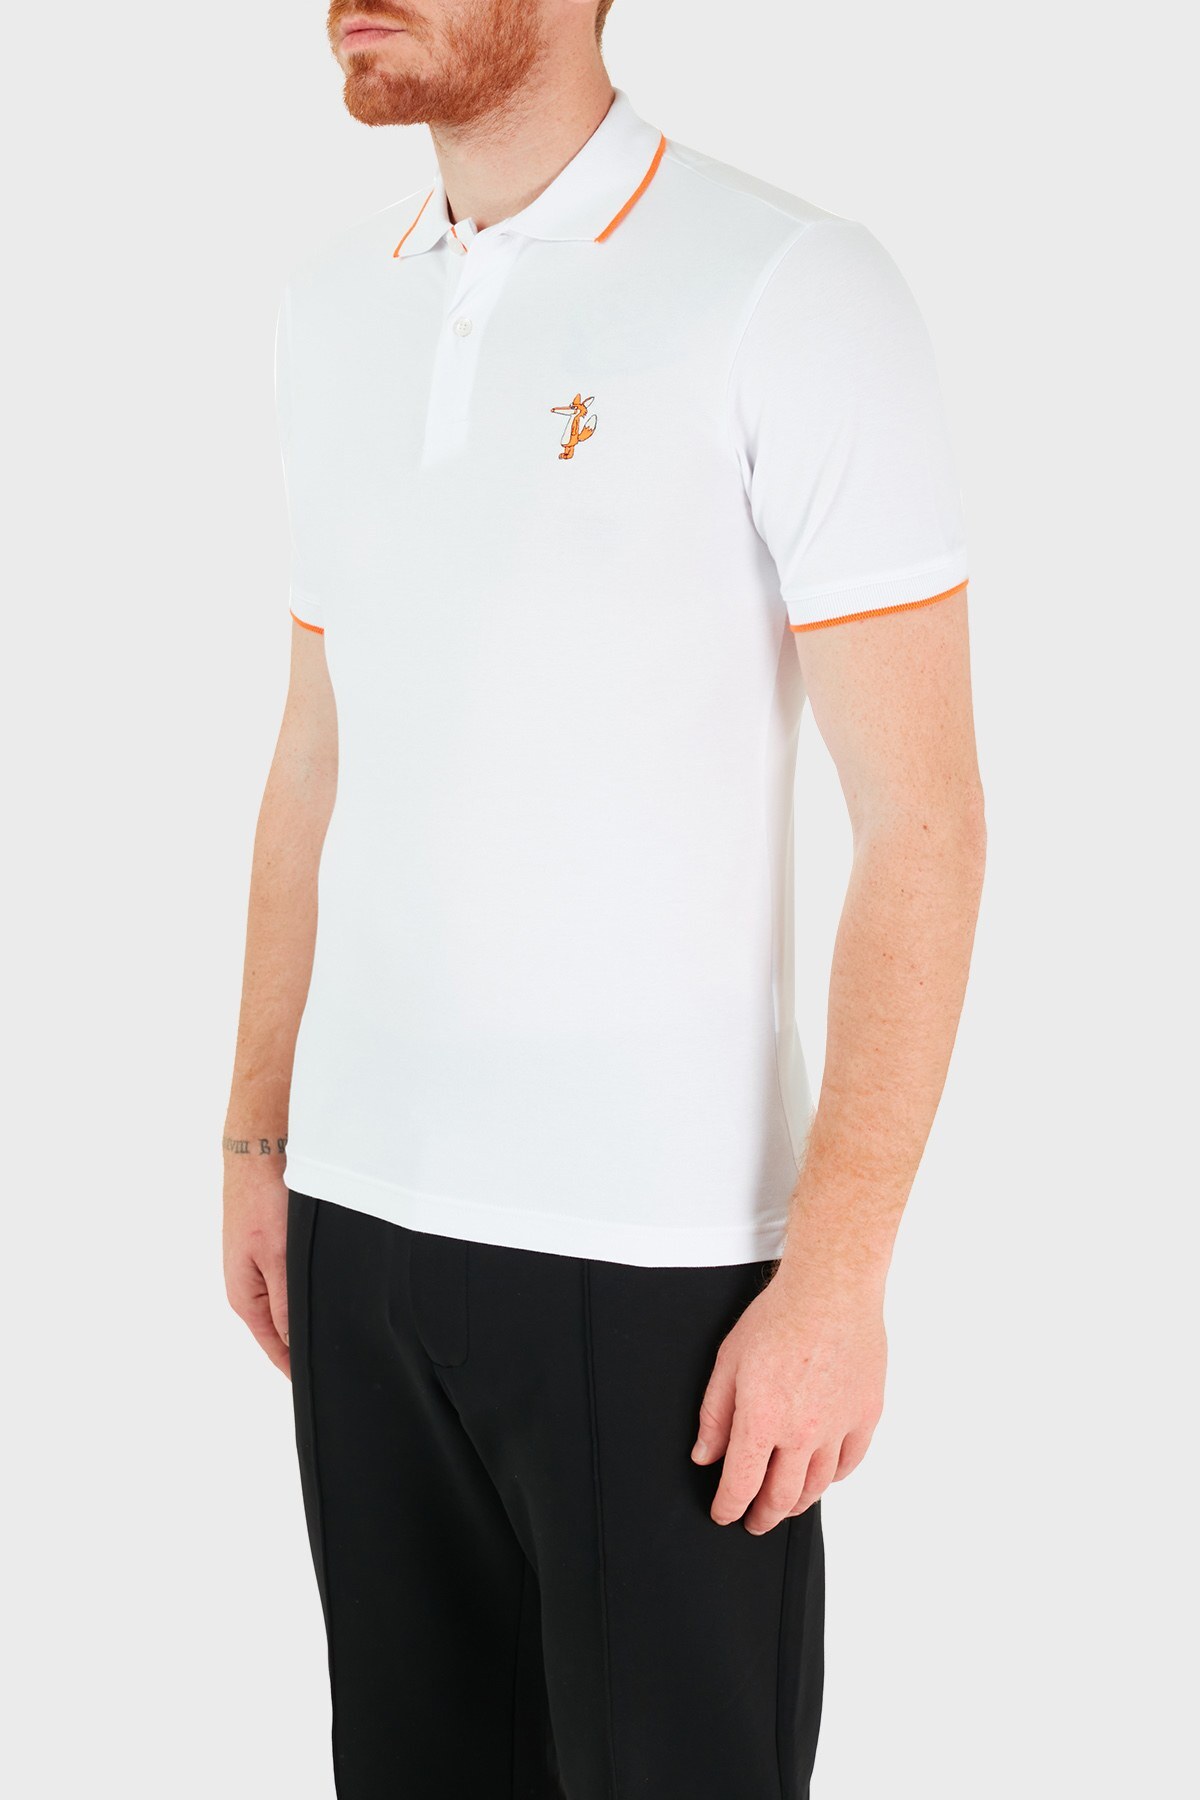 Ruck & Maul Pamuklu Düğmeli T Shirt Erkek Polo RMM01000713 BEYAZ